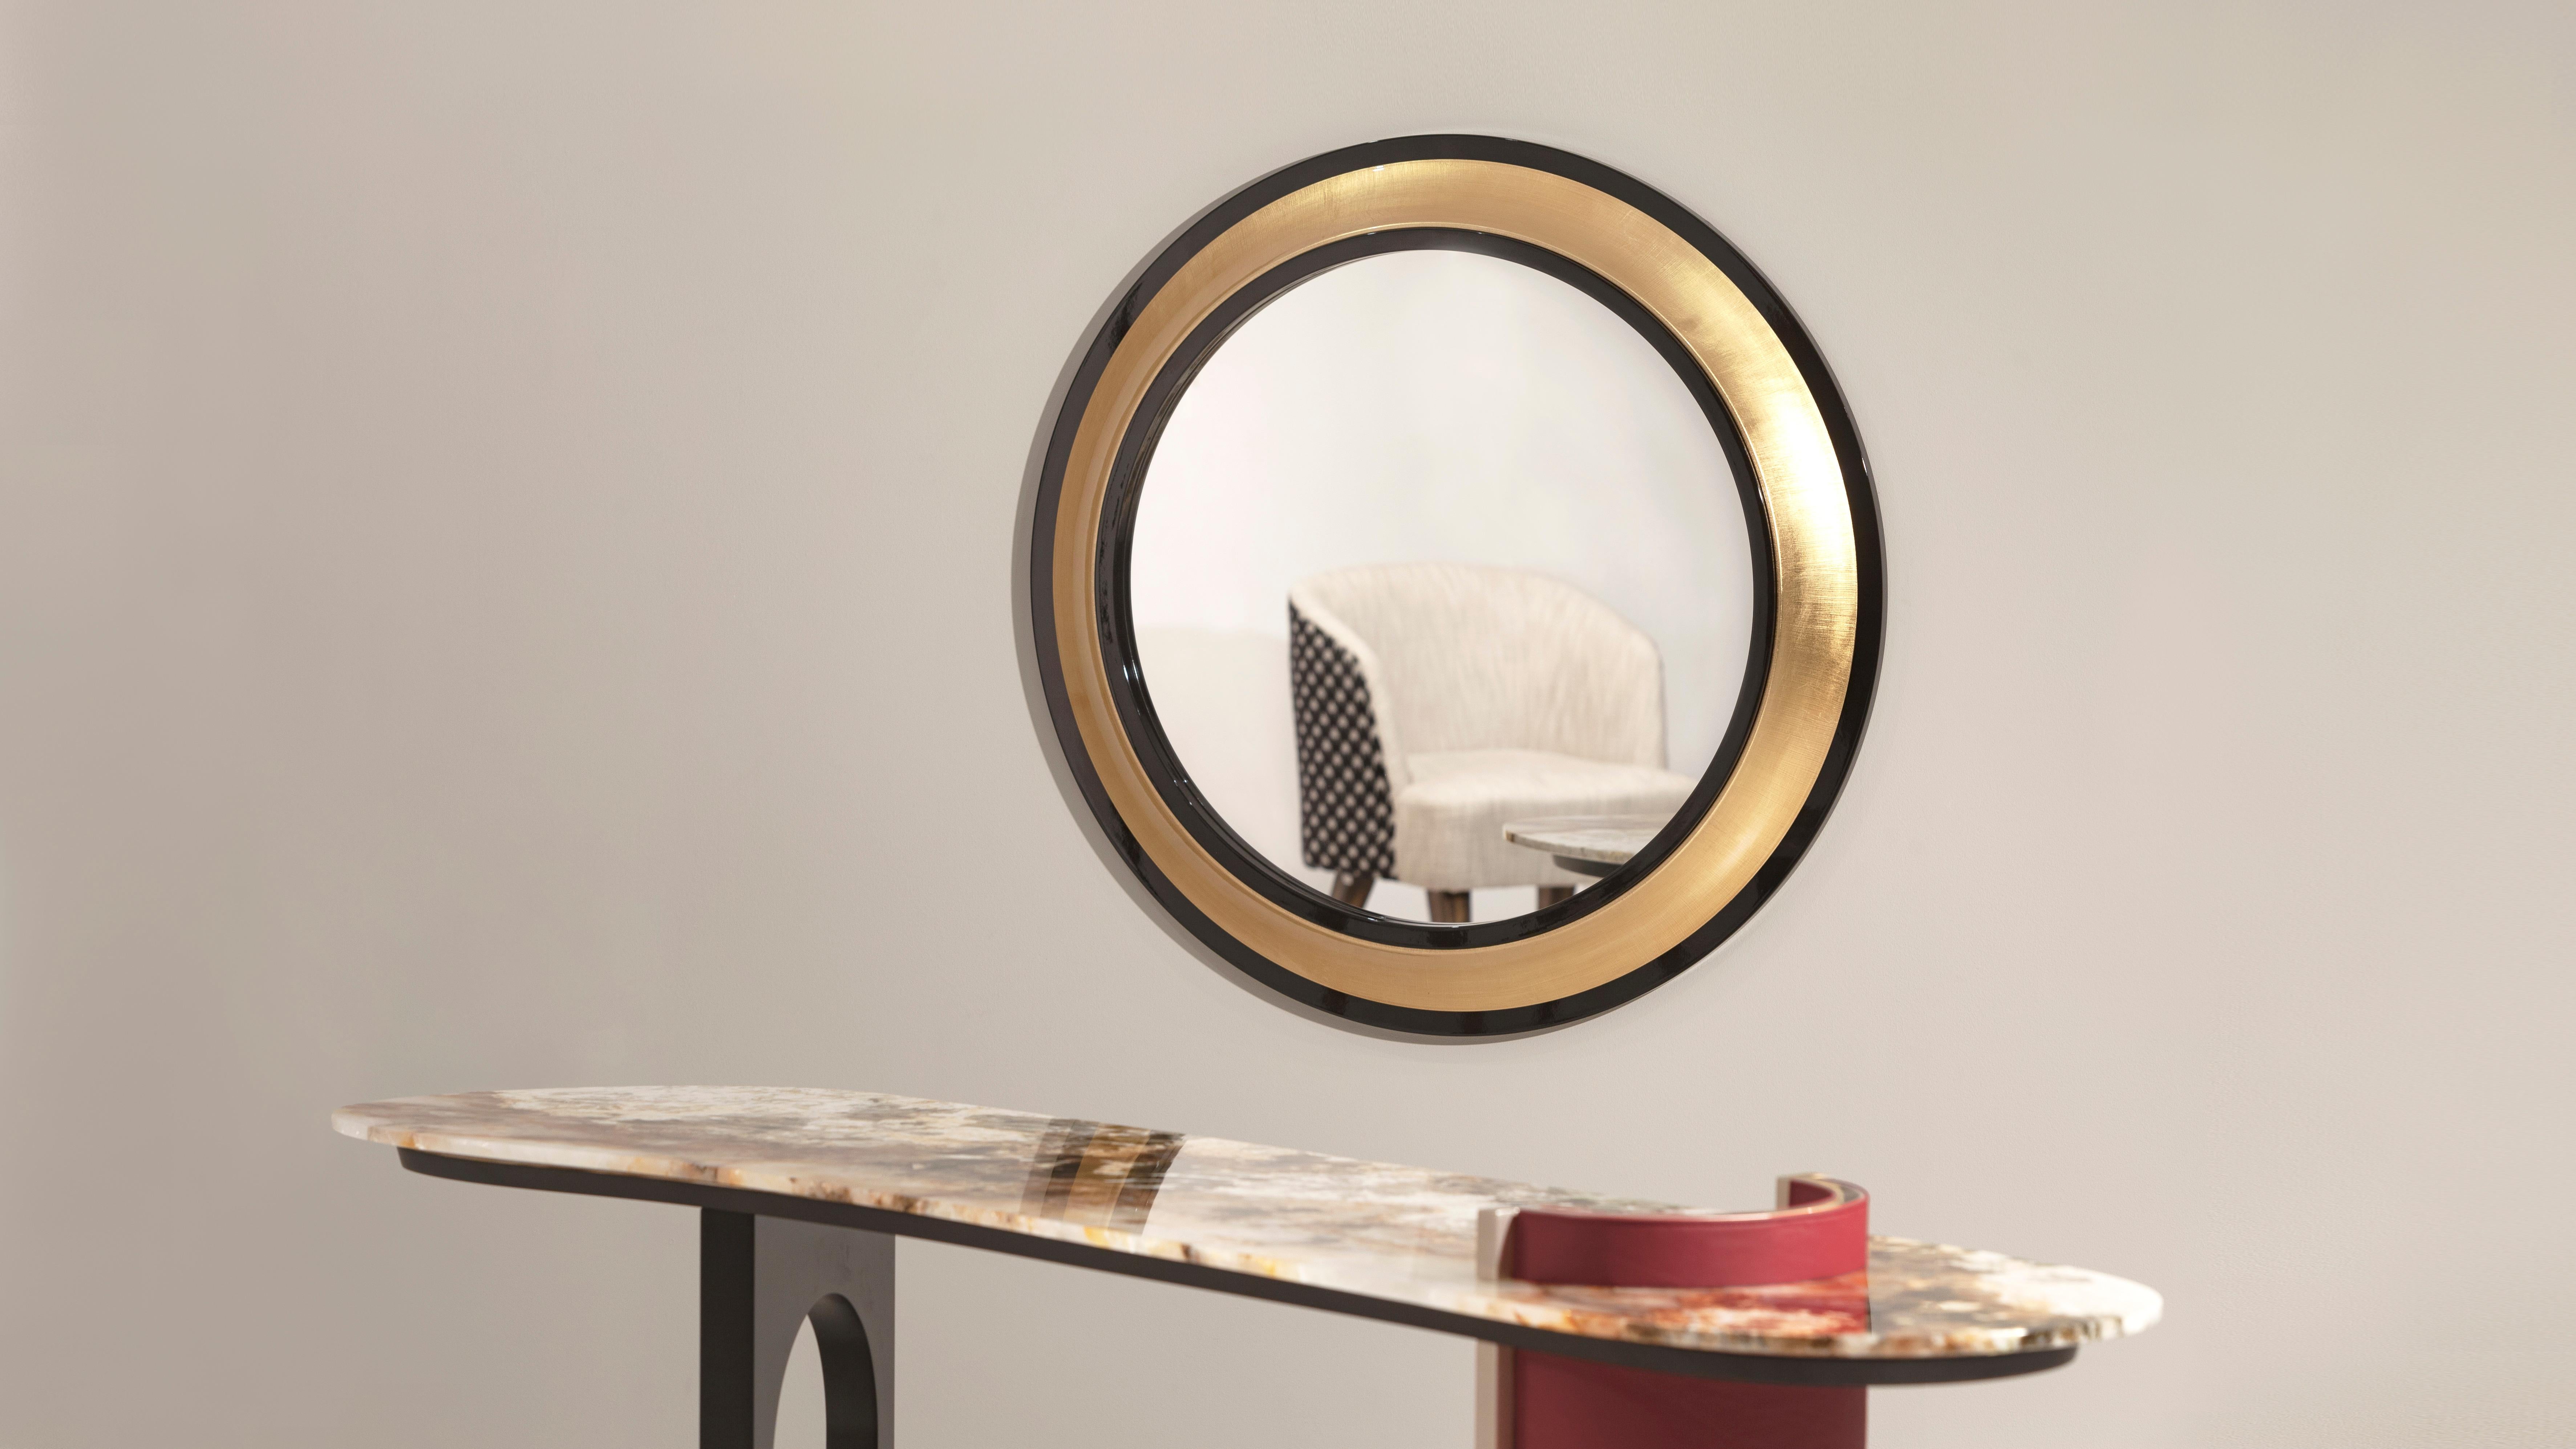 Miroir Grifo, Collection Collective, fait à la main au Portugal - Europe par GF Modern.

Grifo est un miroir rond de style classique qui reflète sa personnalité gracieuse. Le contraste saisissant entre les deux anneaux noirs et l'anneau central en